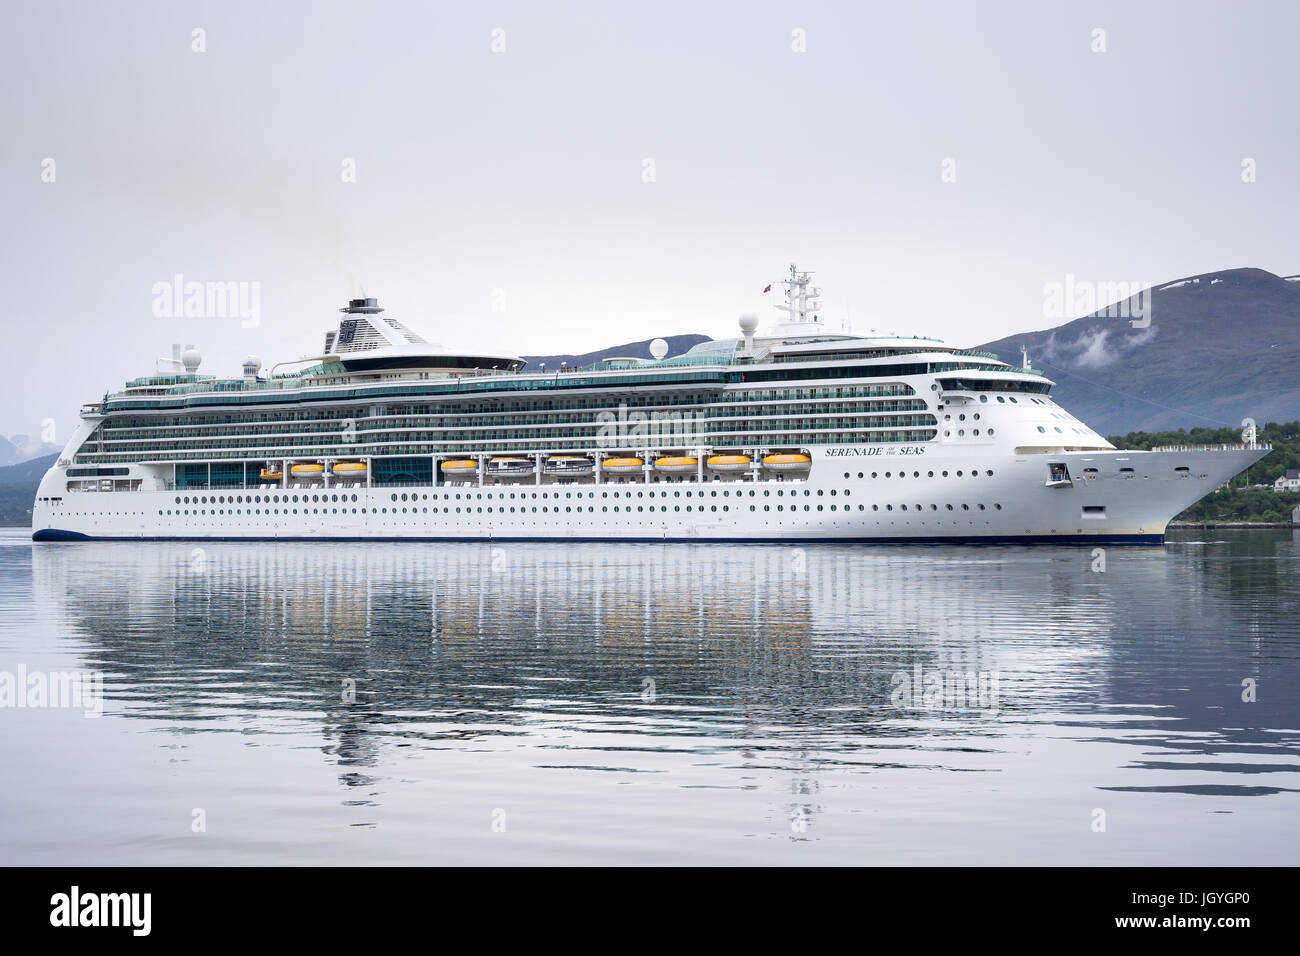 STÄNDCHEN des Meere eingehenden Alesund, ein Kreuzfahrtschiff der Radiance Klasse, die im Besitz und betrieben von Royal Caribbean International Cruise Line. Stockfoto